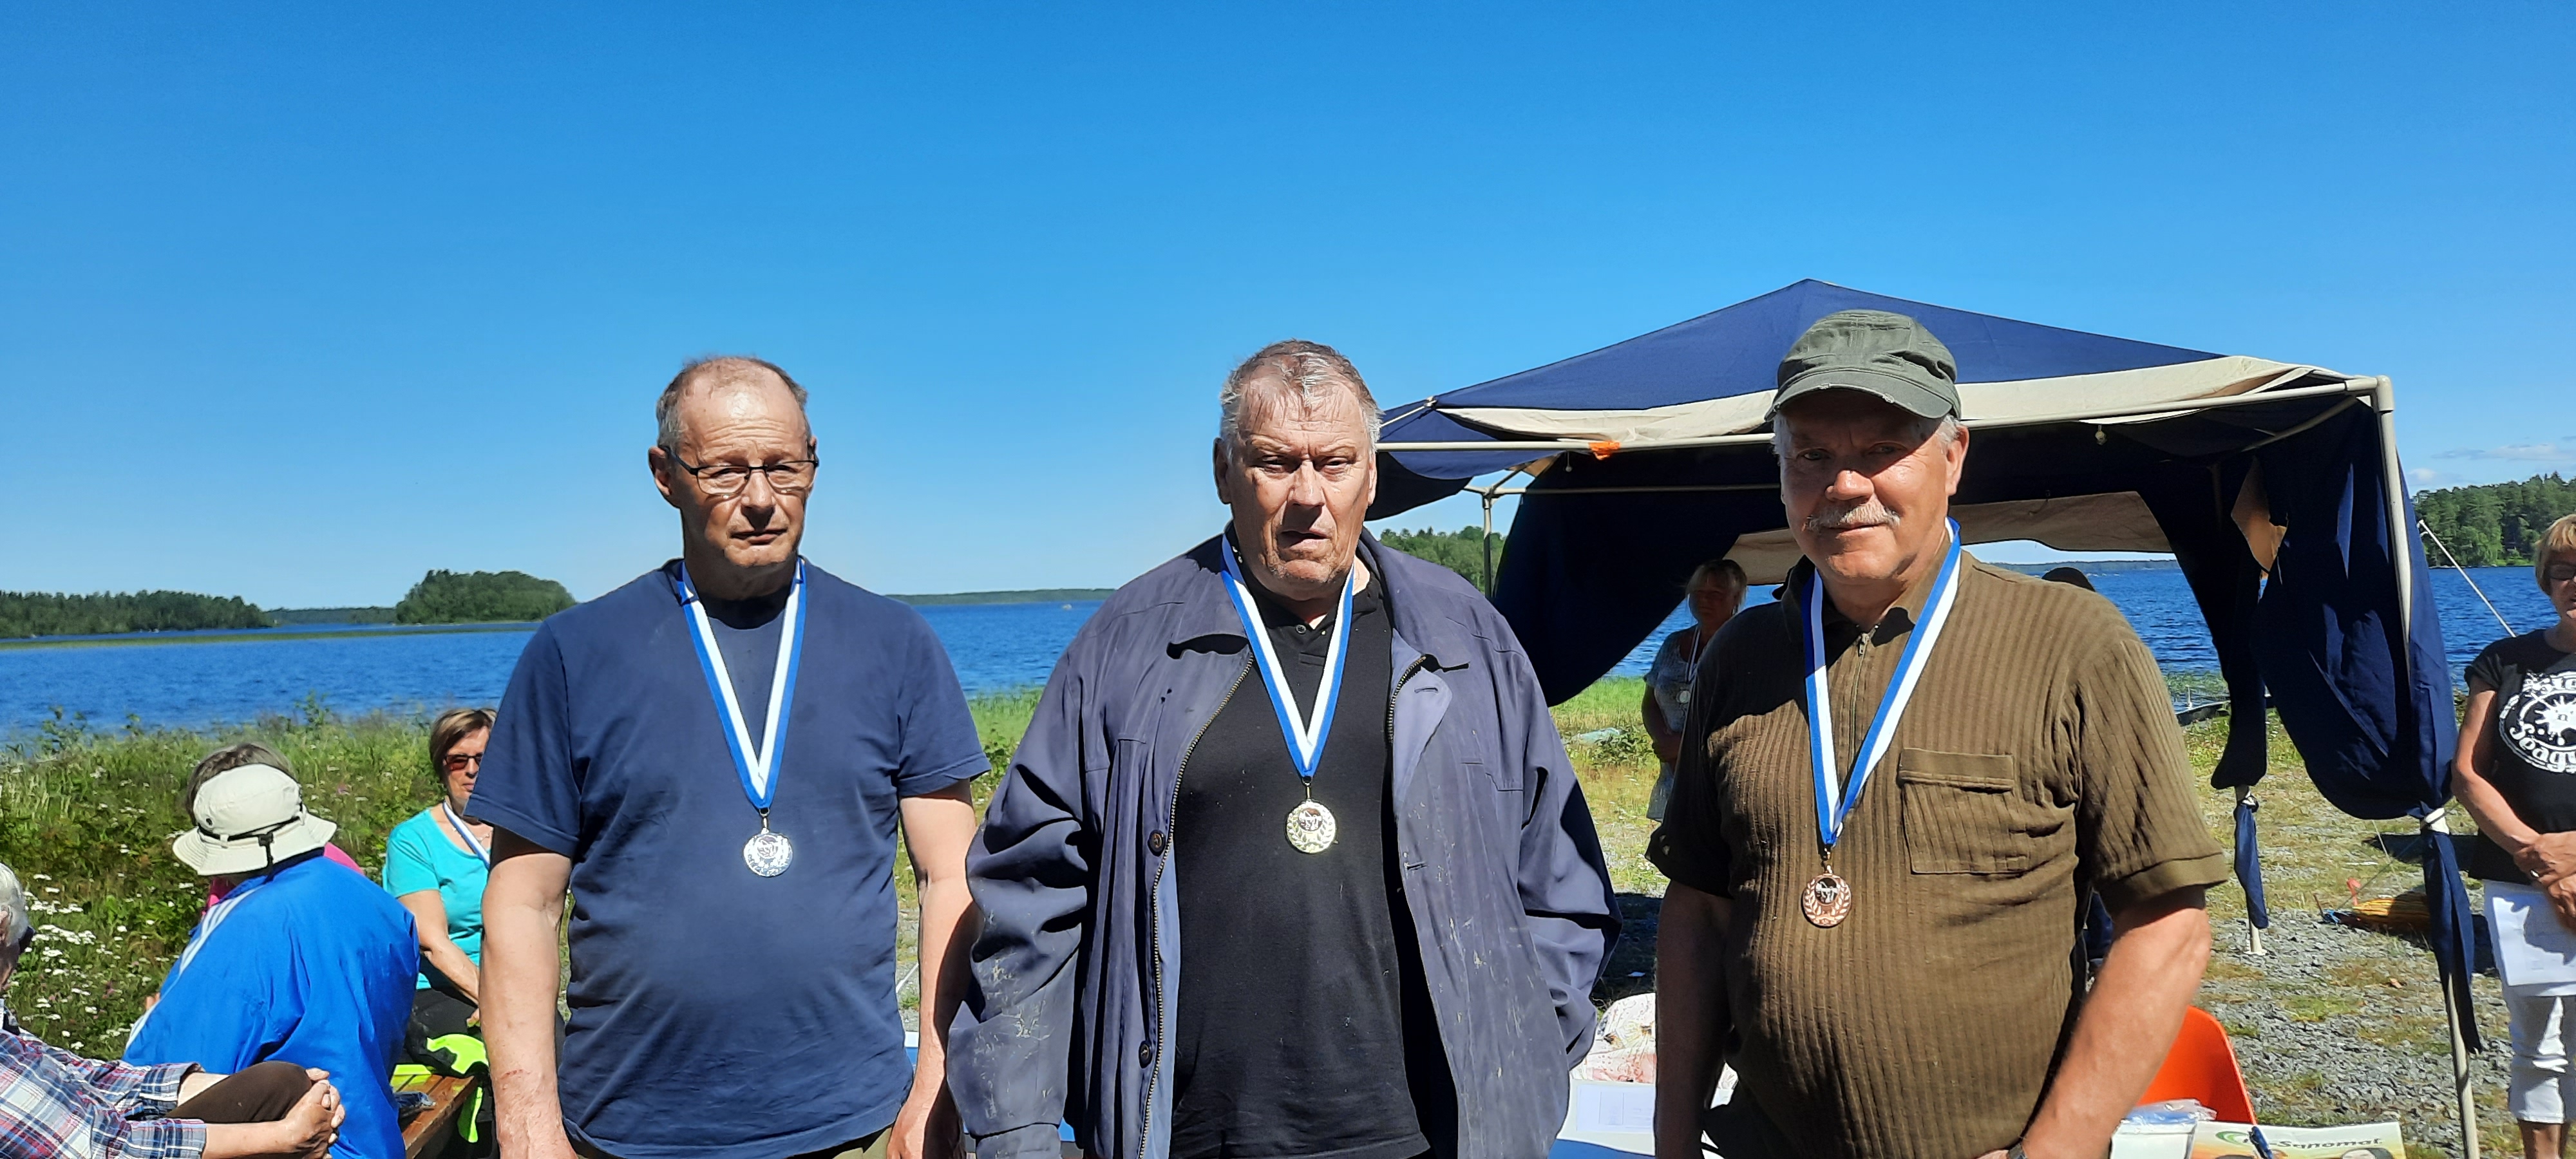 Kultaa Jari Kuorikoskelle Kaustiselta (keskellä), hopeaa Vesa Polso Veteli (vasemmalla) j pronssimitalisti Seppo Lamminen Kokkolasta oikealla.